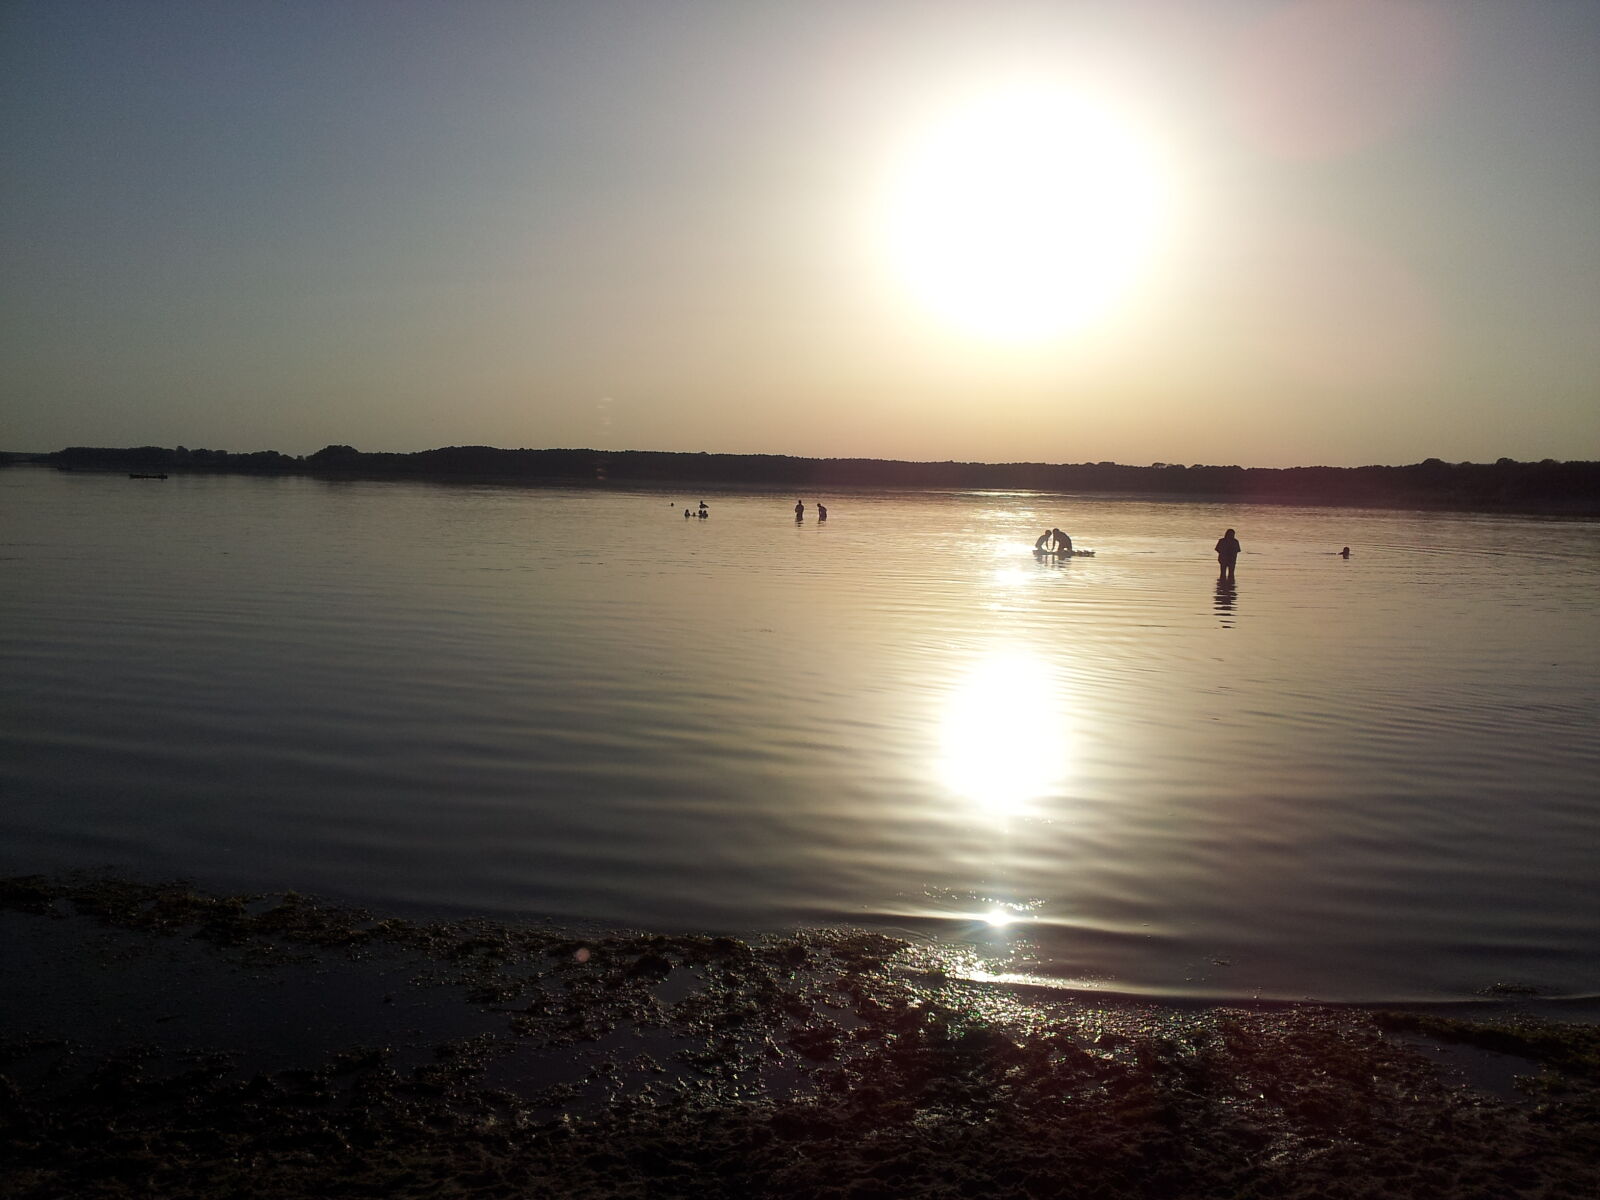 Samsung Galaxy S2 sample photo. Evening, sun, lake, water photography